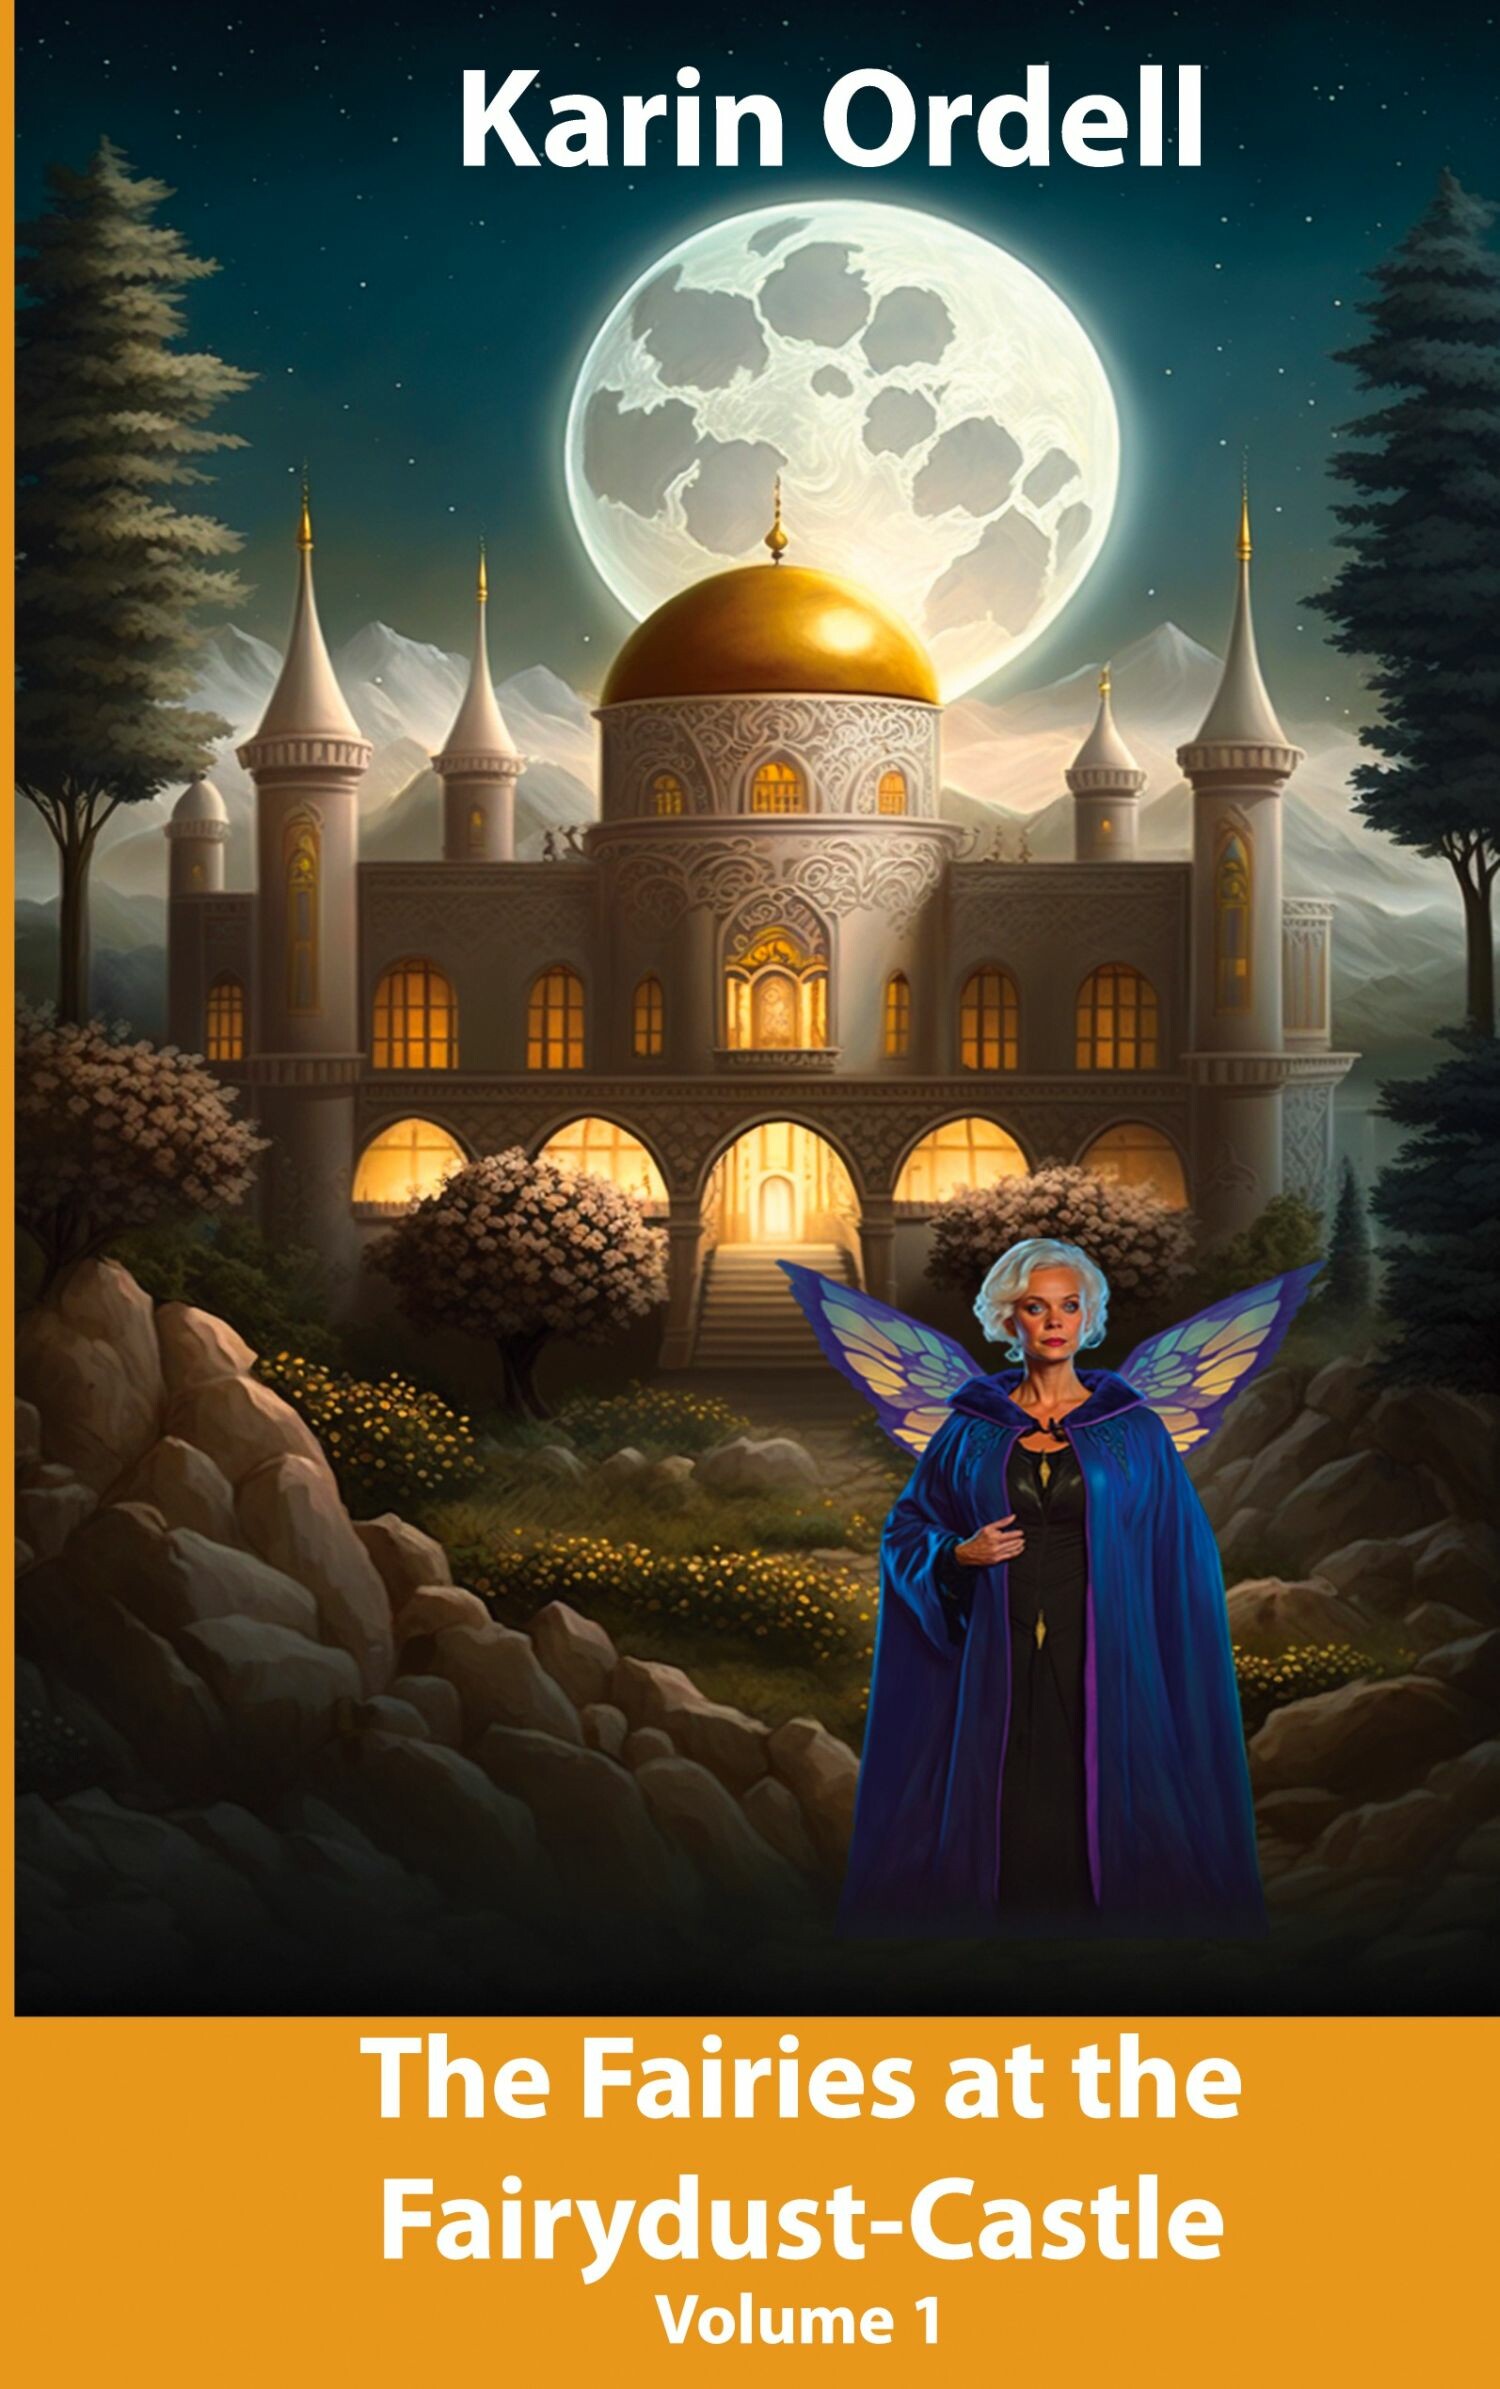 The Fairies at the Fairydust-Castle